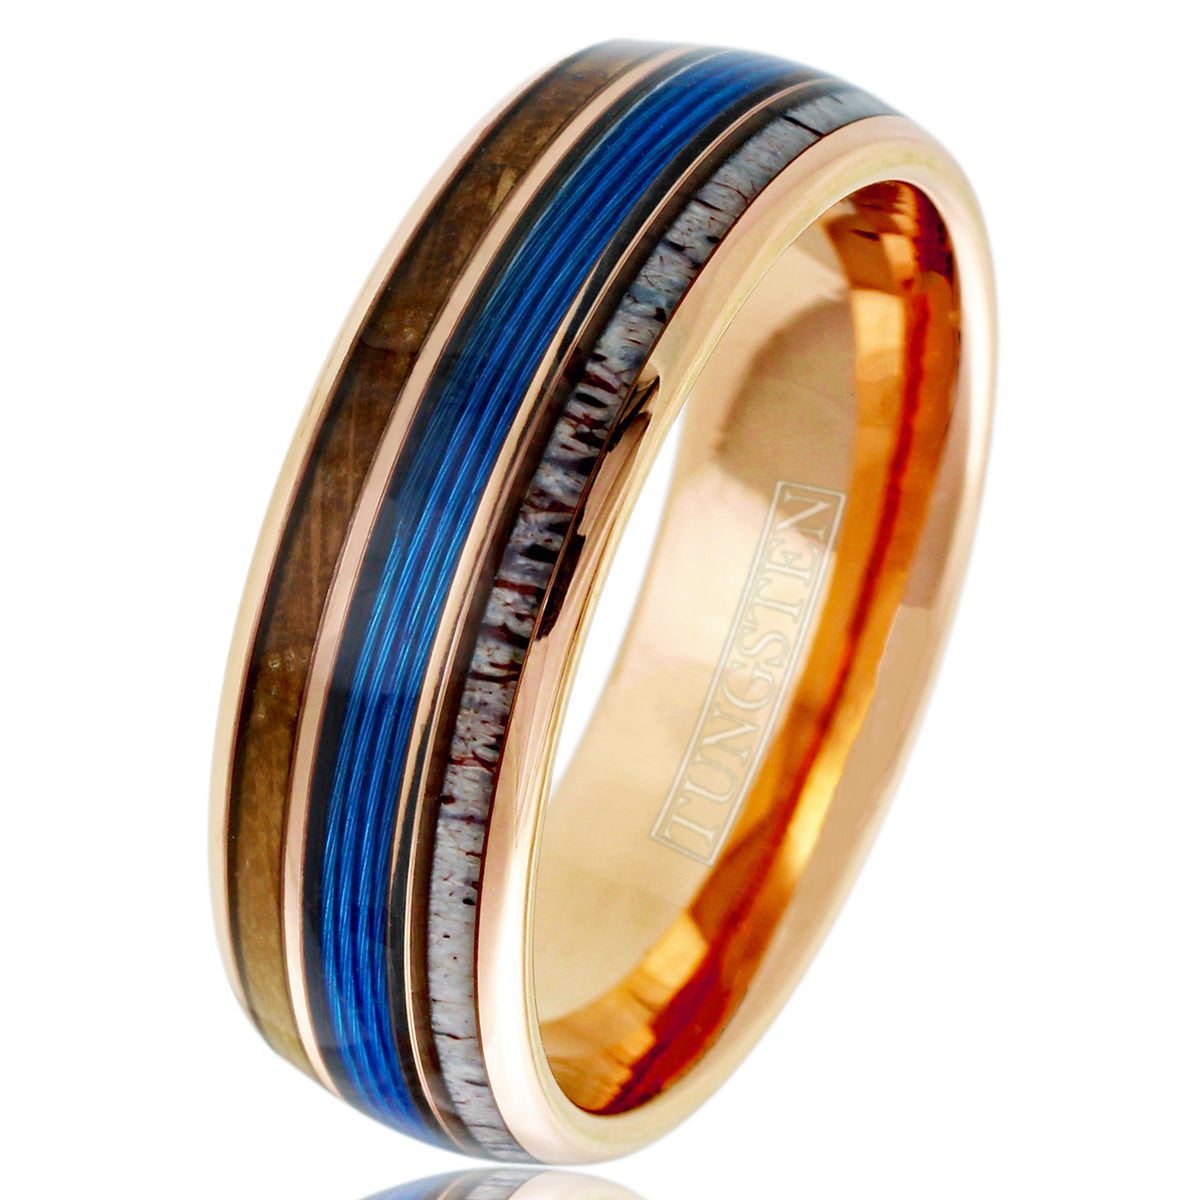 Fishing Wedding Ring with Antler and Whiskey Barrel Wood, Blue Fishing Line Wedding Band, Antler Ring, Outdoorsman Ring, Fisherman's Ring 12